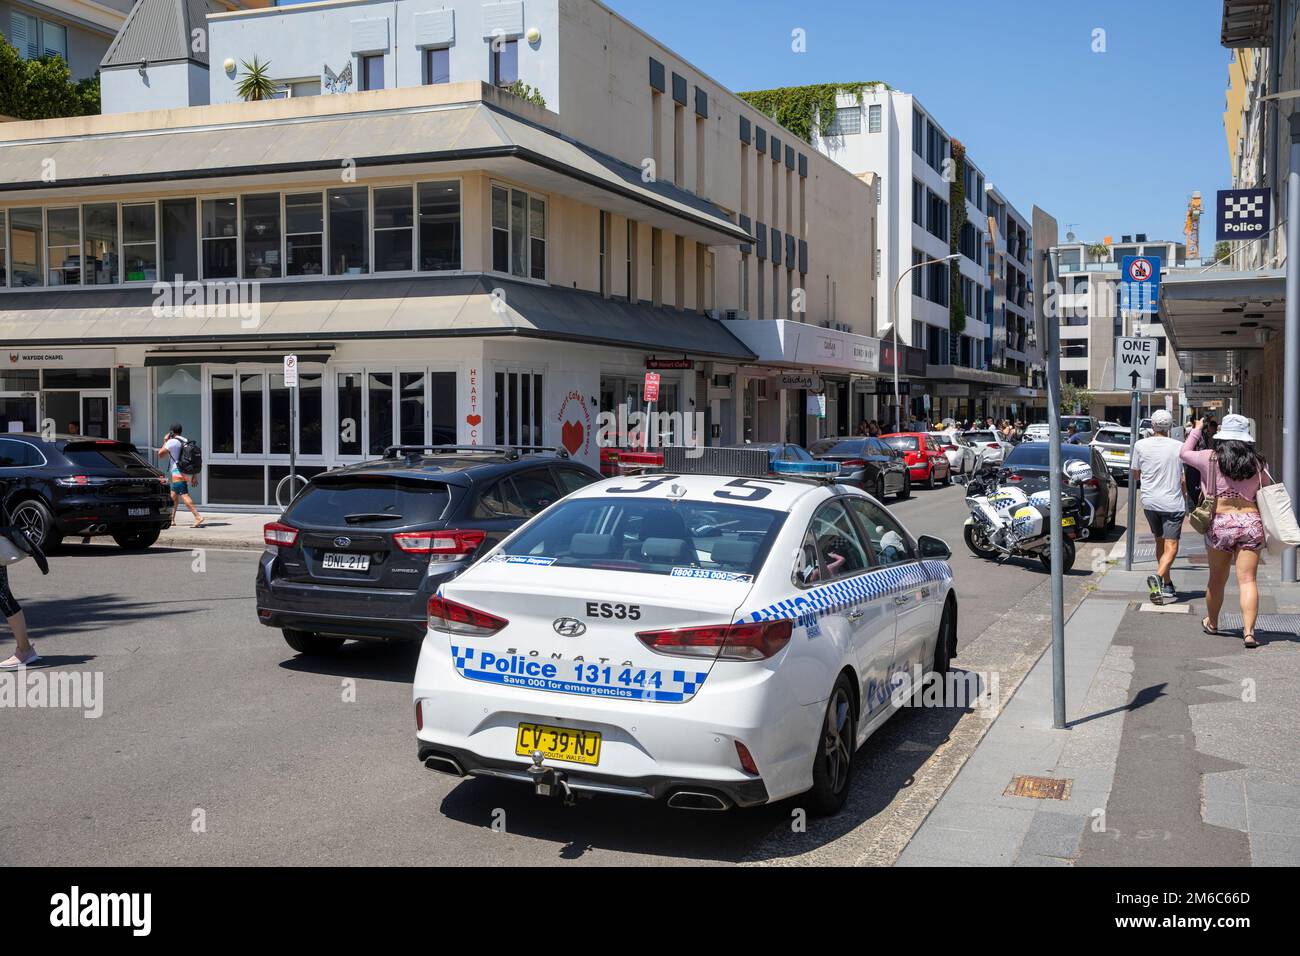 NSW Police car and police motorbike parked in Bondi Beach,Sydney,NSW,Australia Stock Photo